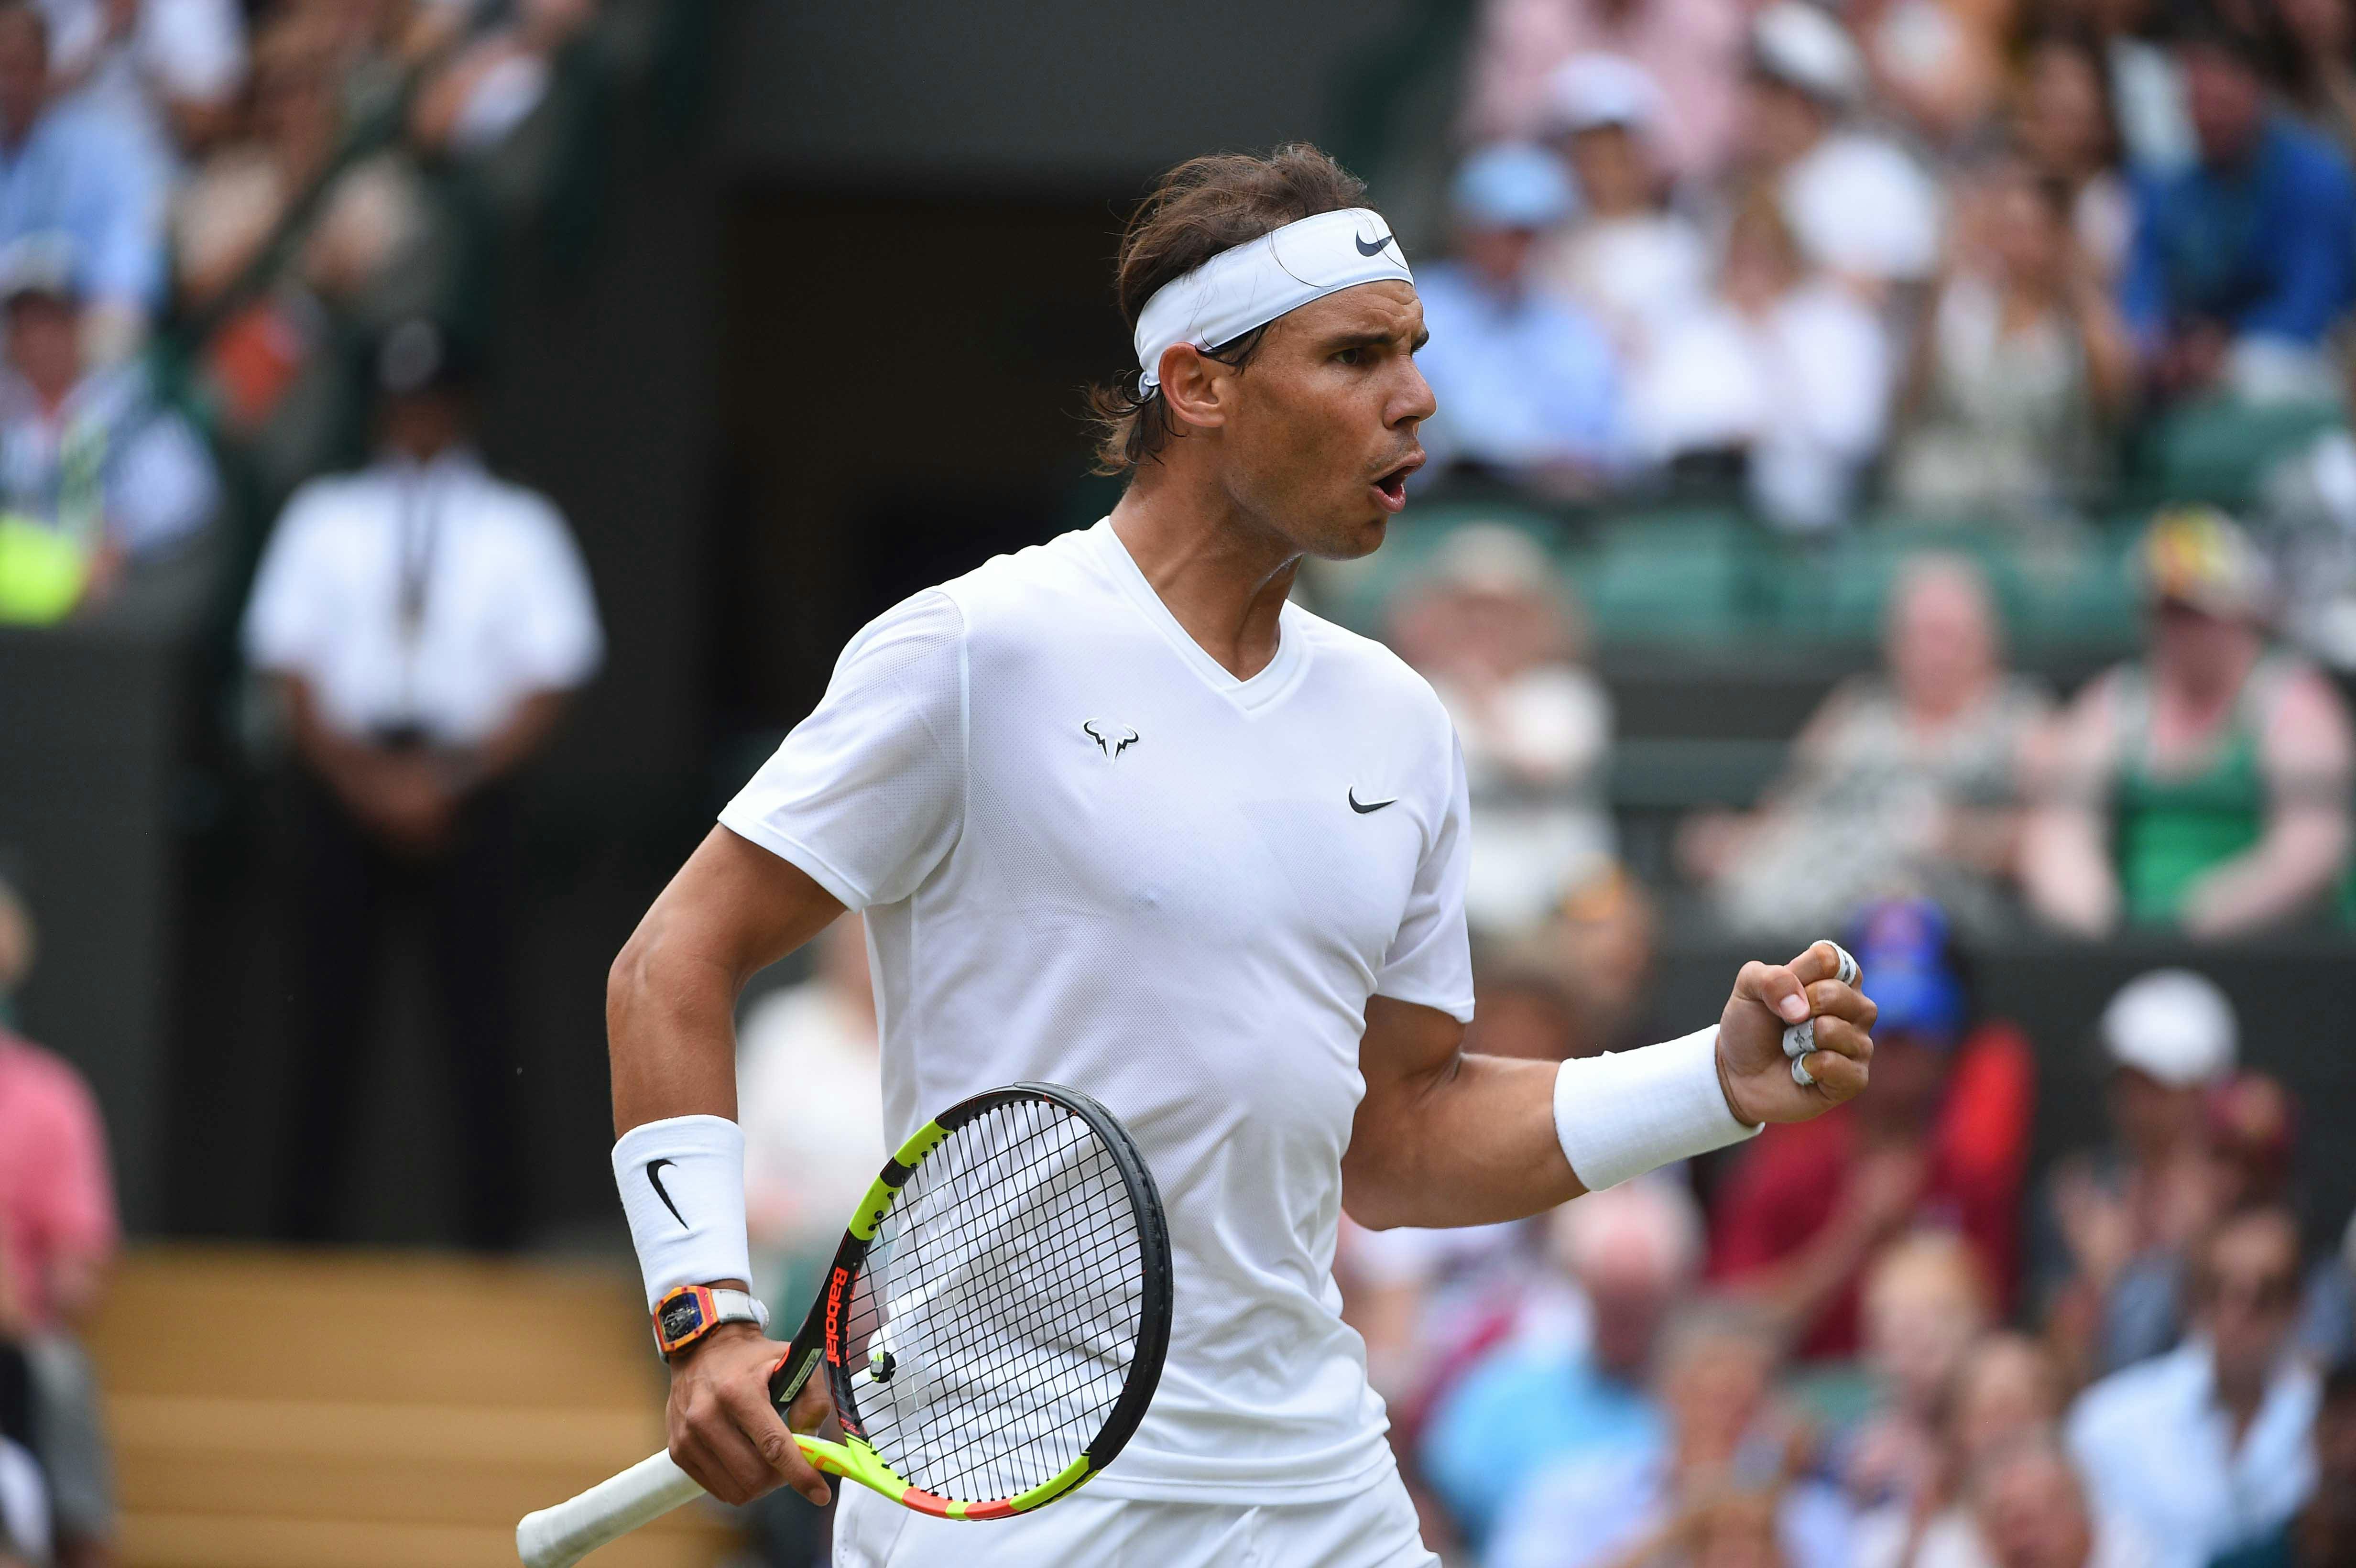 Rafael Nadal during his quarter final at Wimbledon 2019